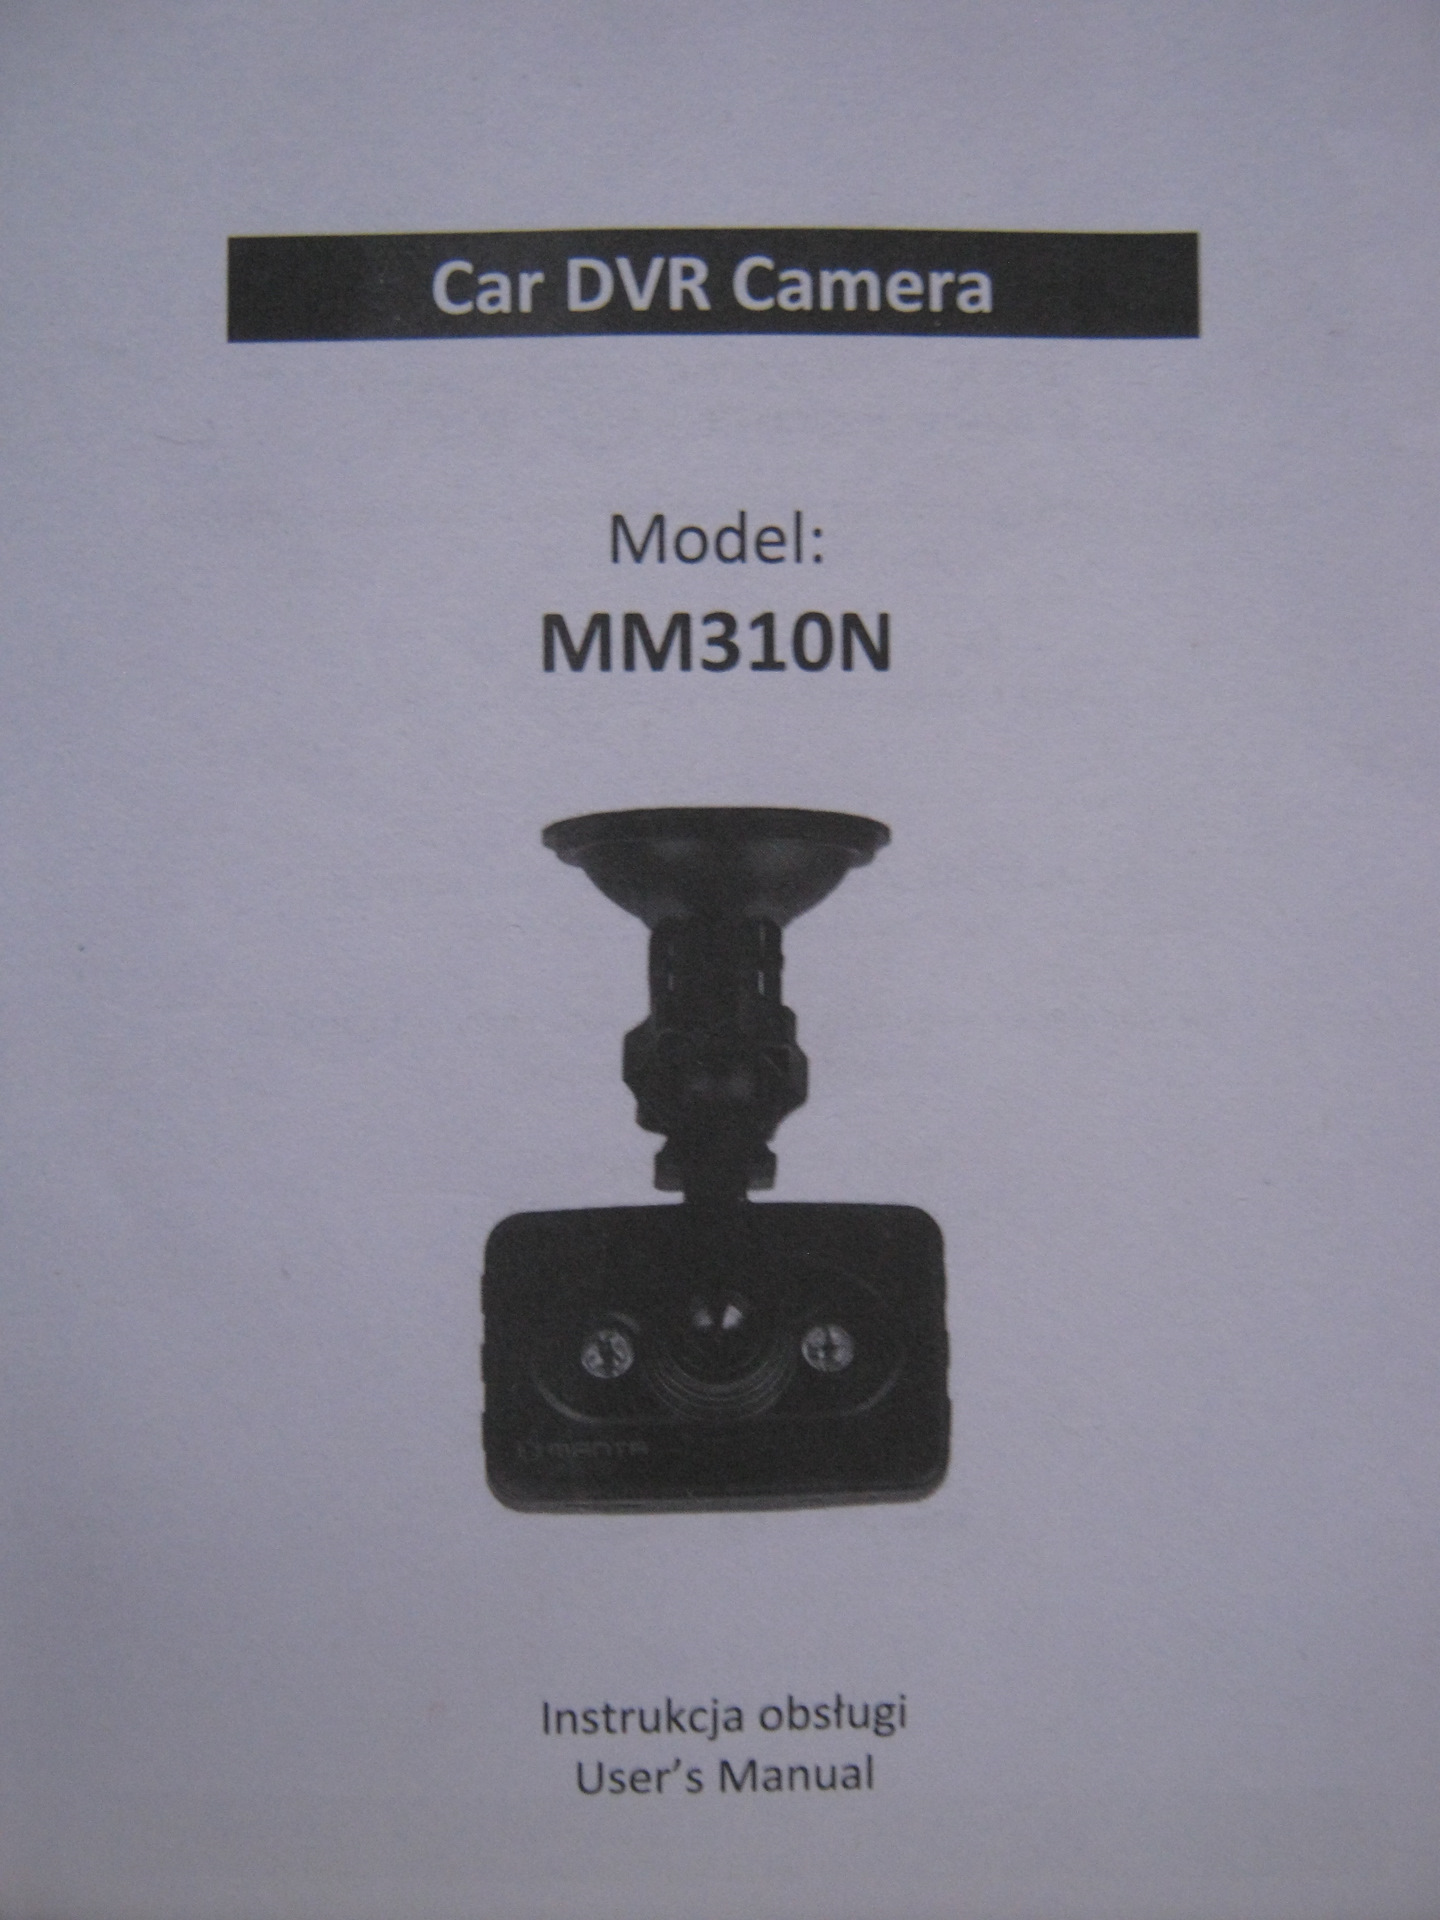 Руководство регистратором. Car Camera видеорегистратор user manual. Инструкция видеорегистратора. Инструкция китайского видеорегистратора.